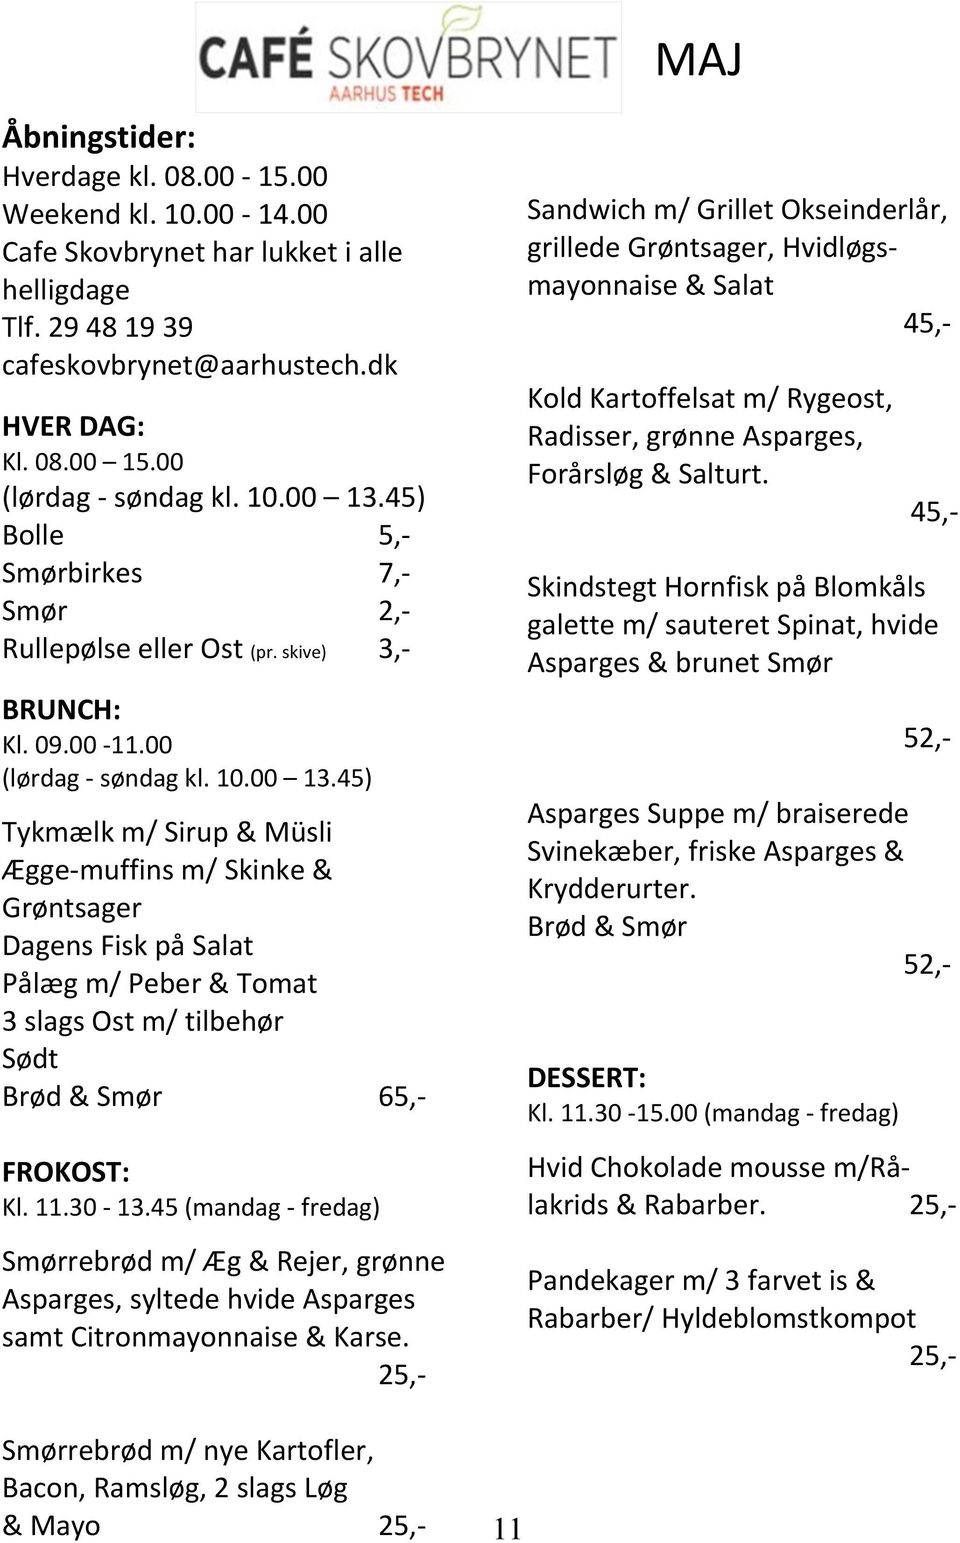 11.30-13.45 (mandag - fredag) Smørrebrød m/ Æg & Rejer, grønne Asparges, syltede hvide Asparges samt Citronmayonnaise & Karse.